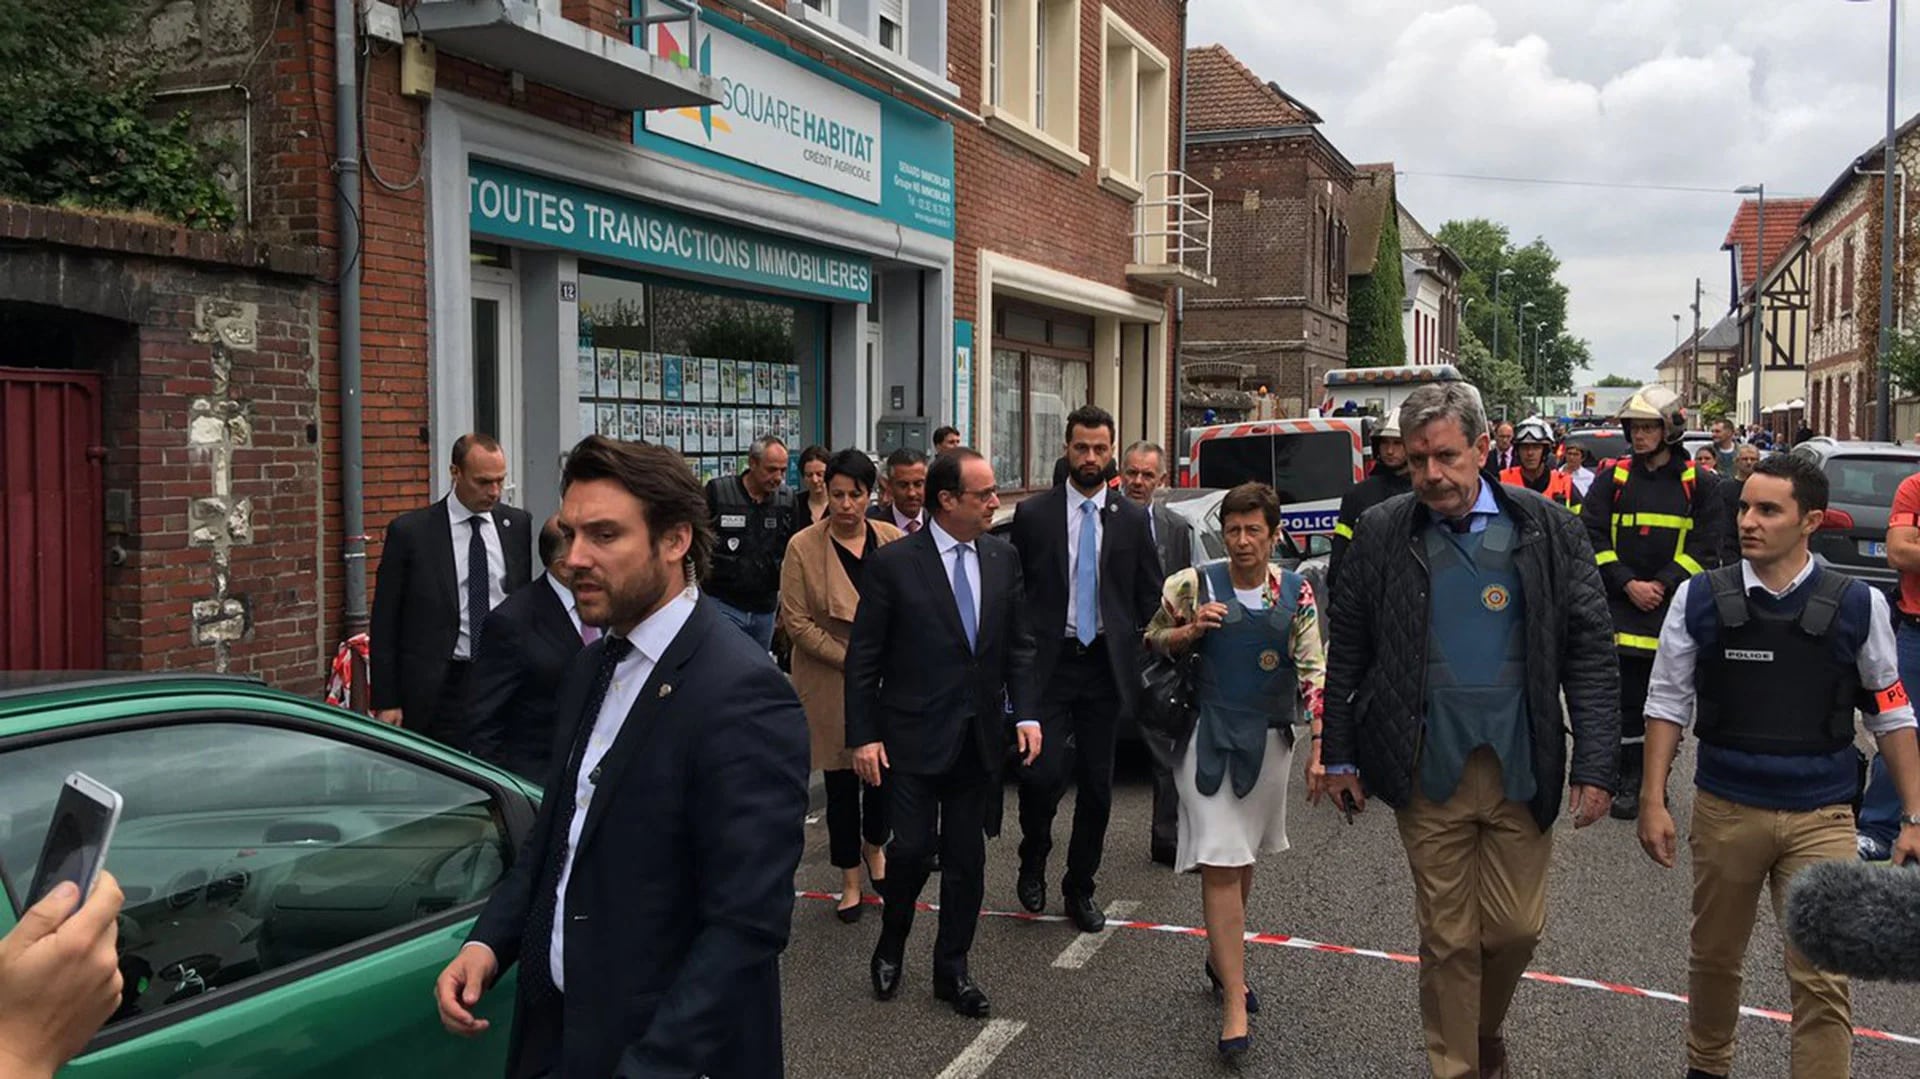 El presidente de Francia, François Hollande, viajó al lugar de la toma de rehenes (@fredveille)